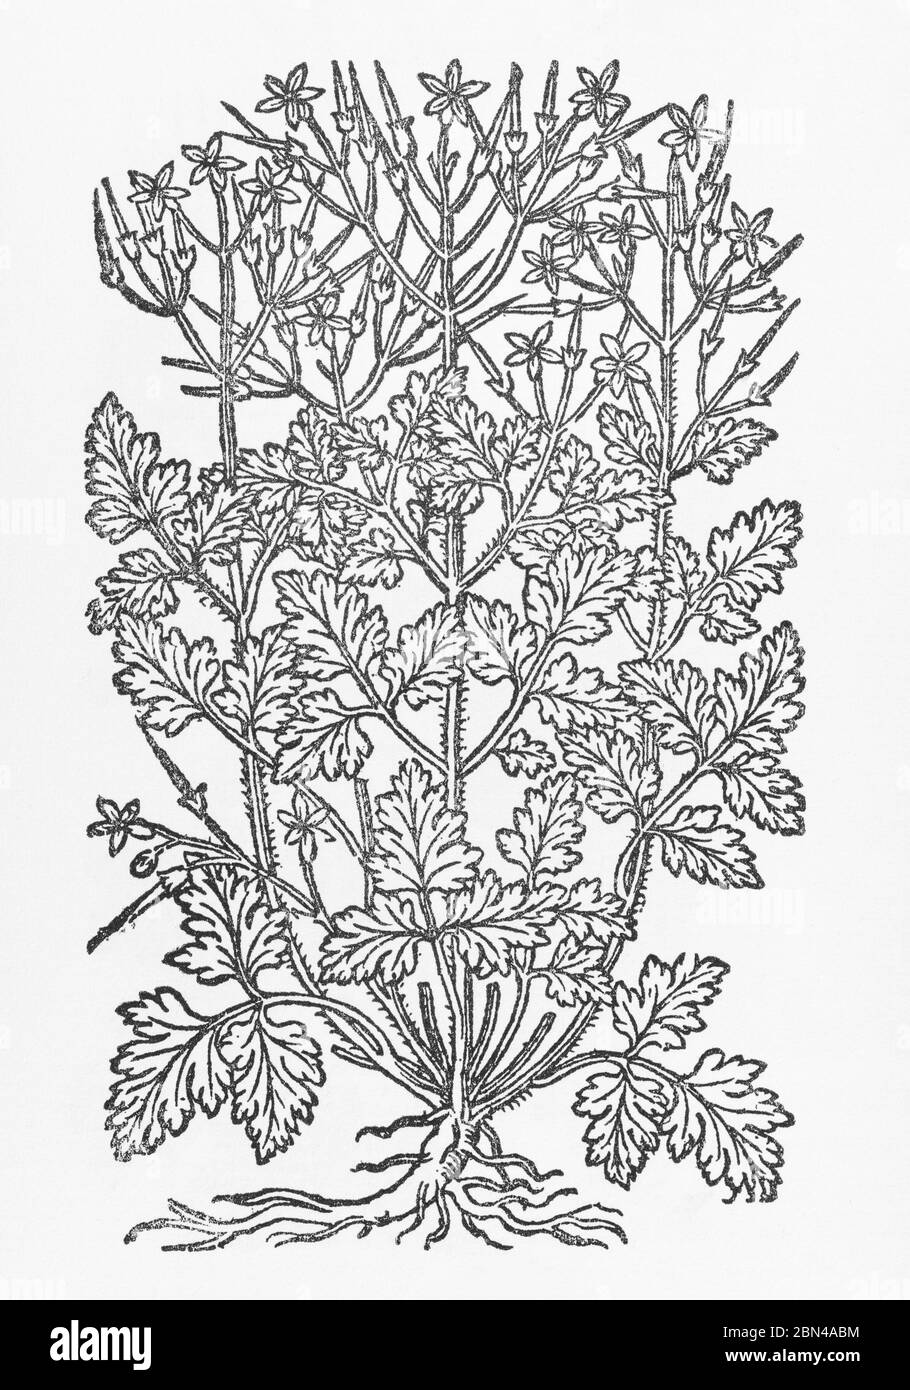 Hierba Robert / Geranium robertianum planta de madera cortada de Gerarde Herball, Historia de las plantas. Es una planta medicinal conocida para los remedios. P794. Foto de stock